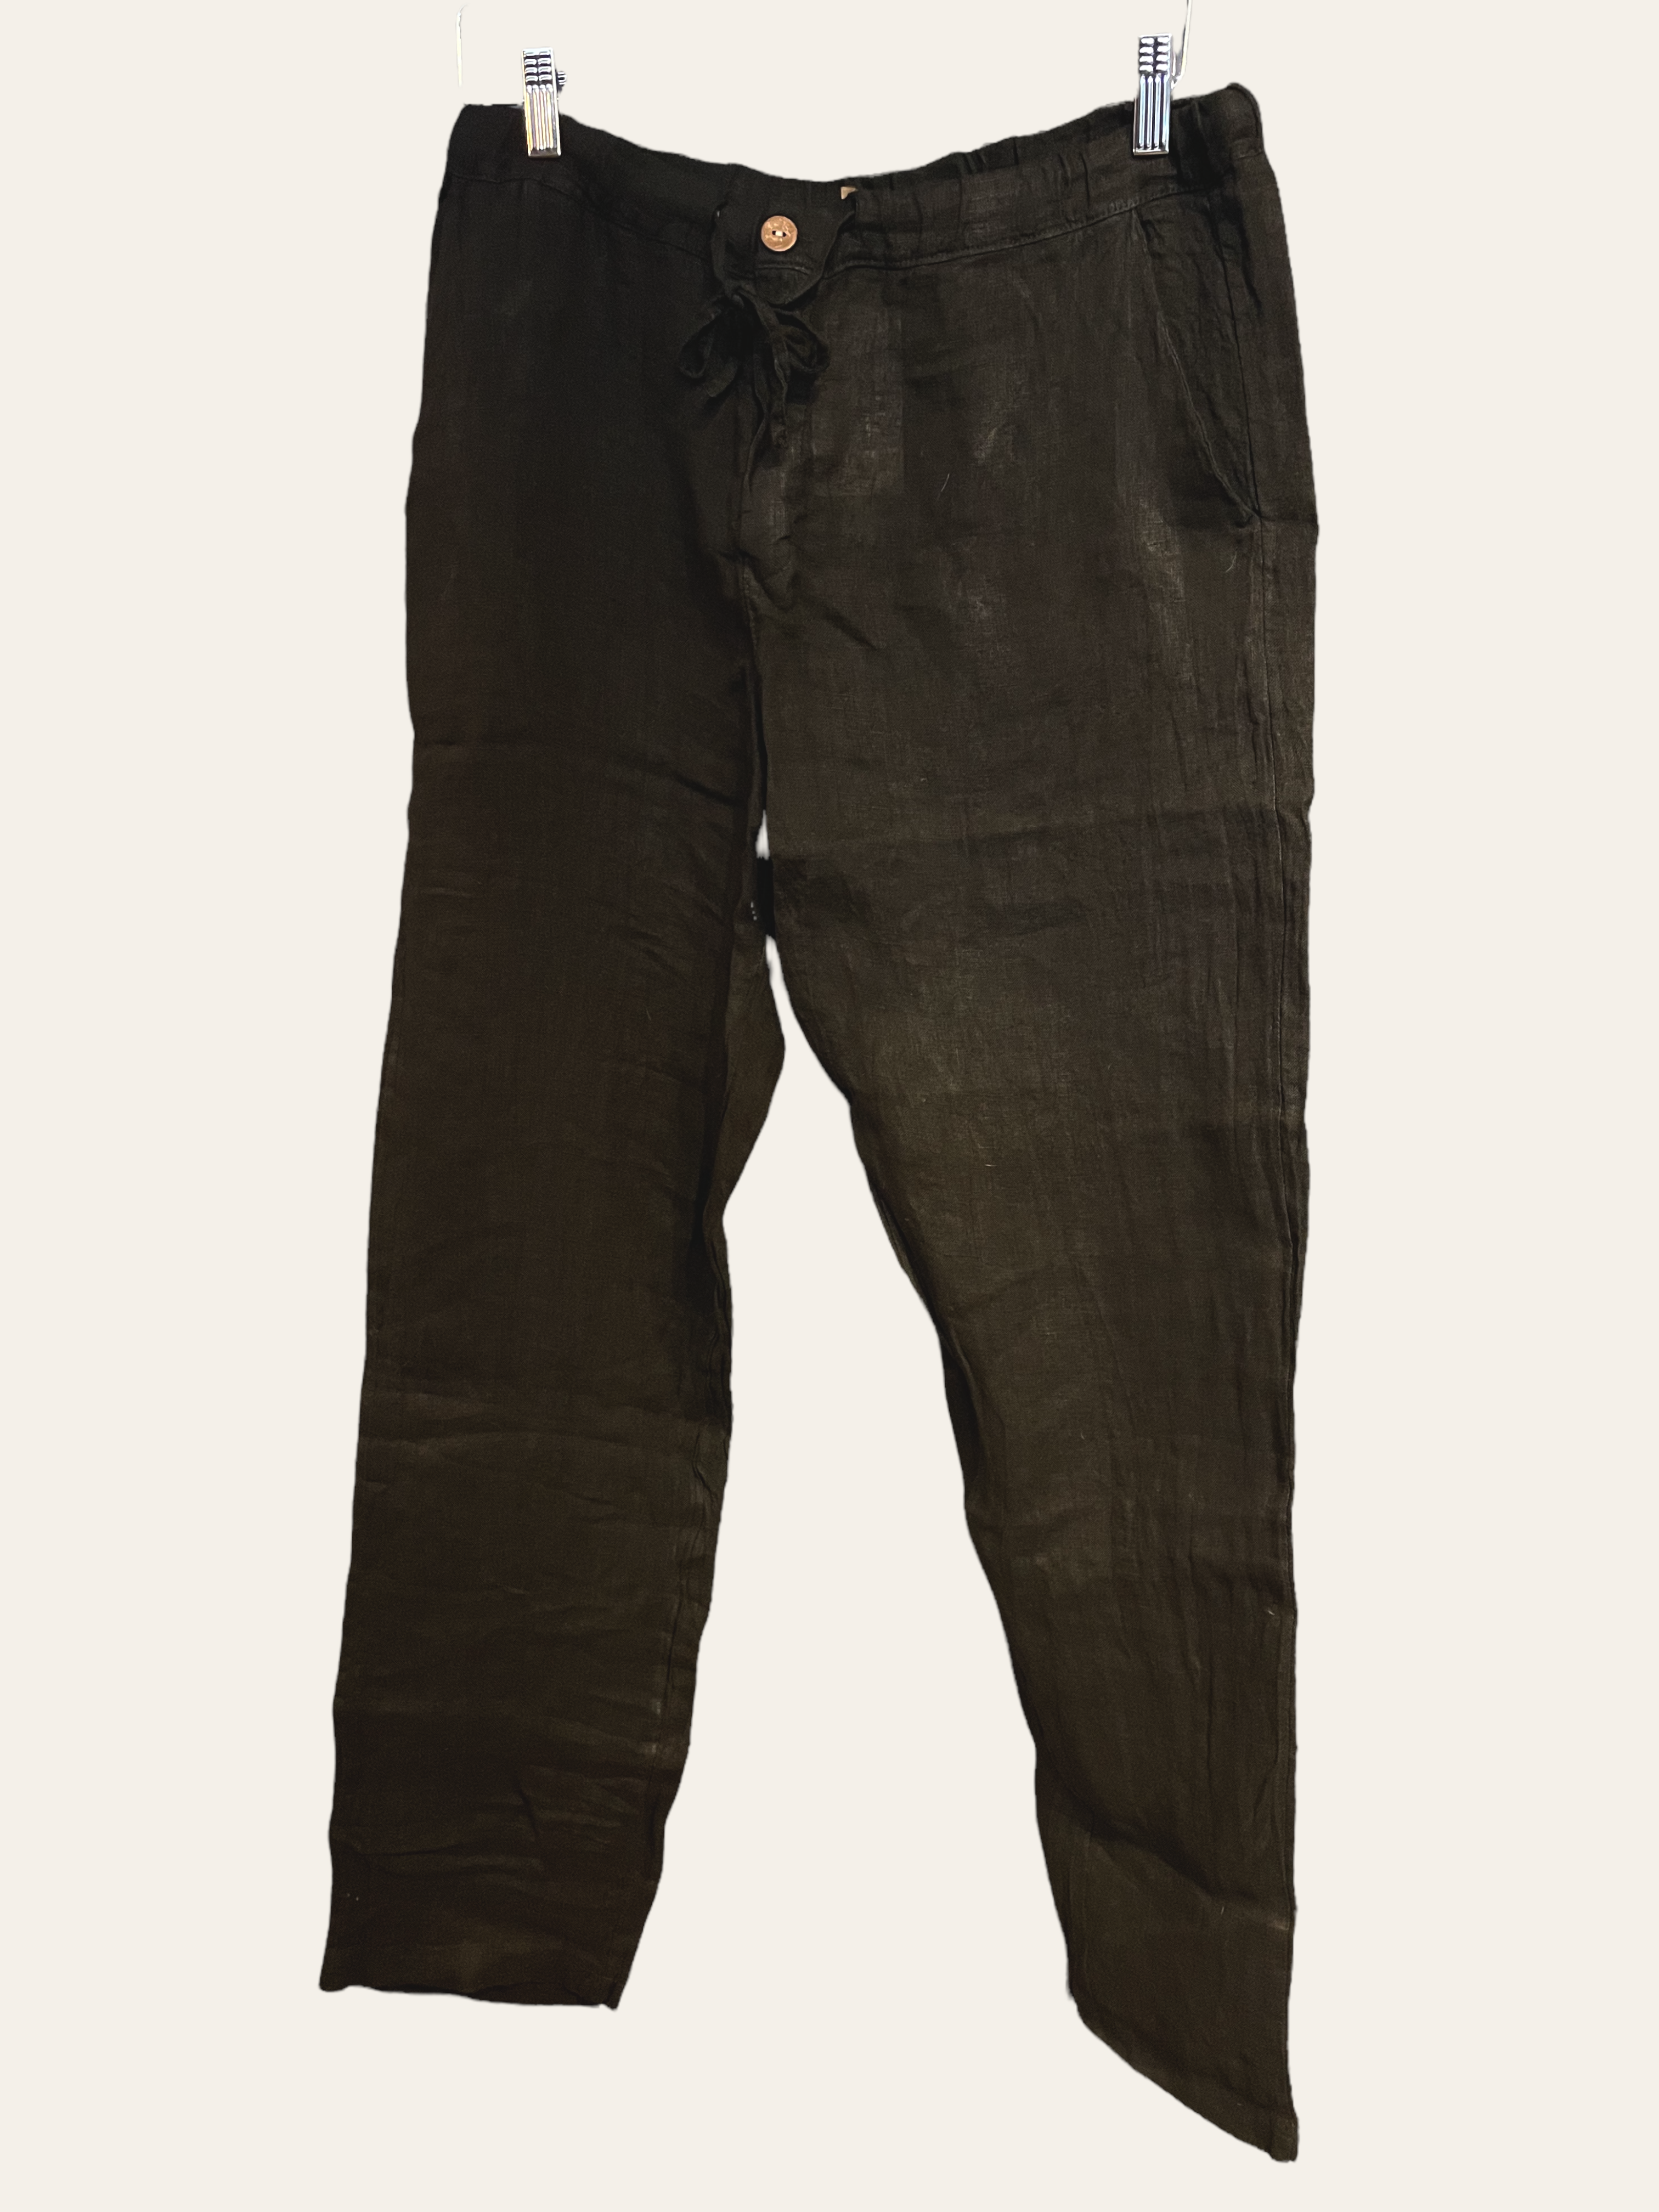 Stajl linen pants (male model)